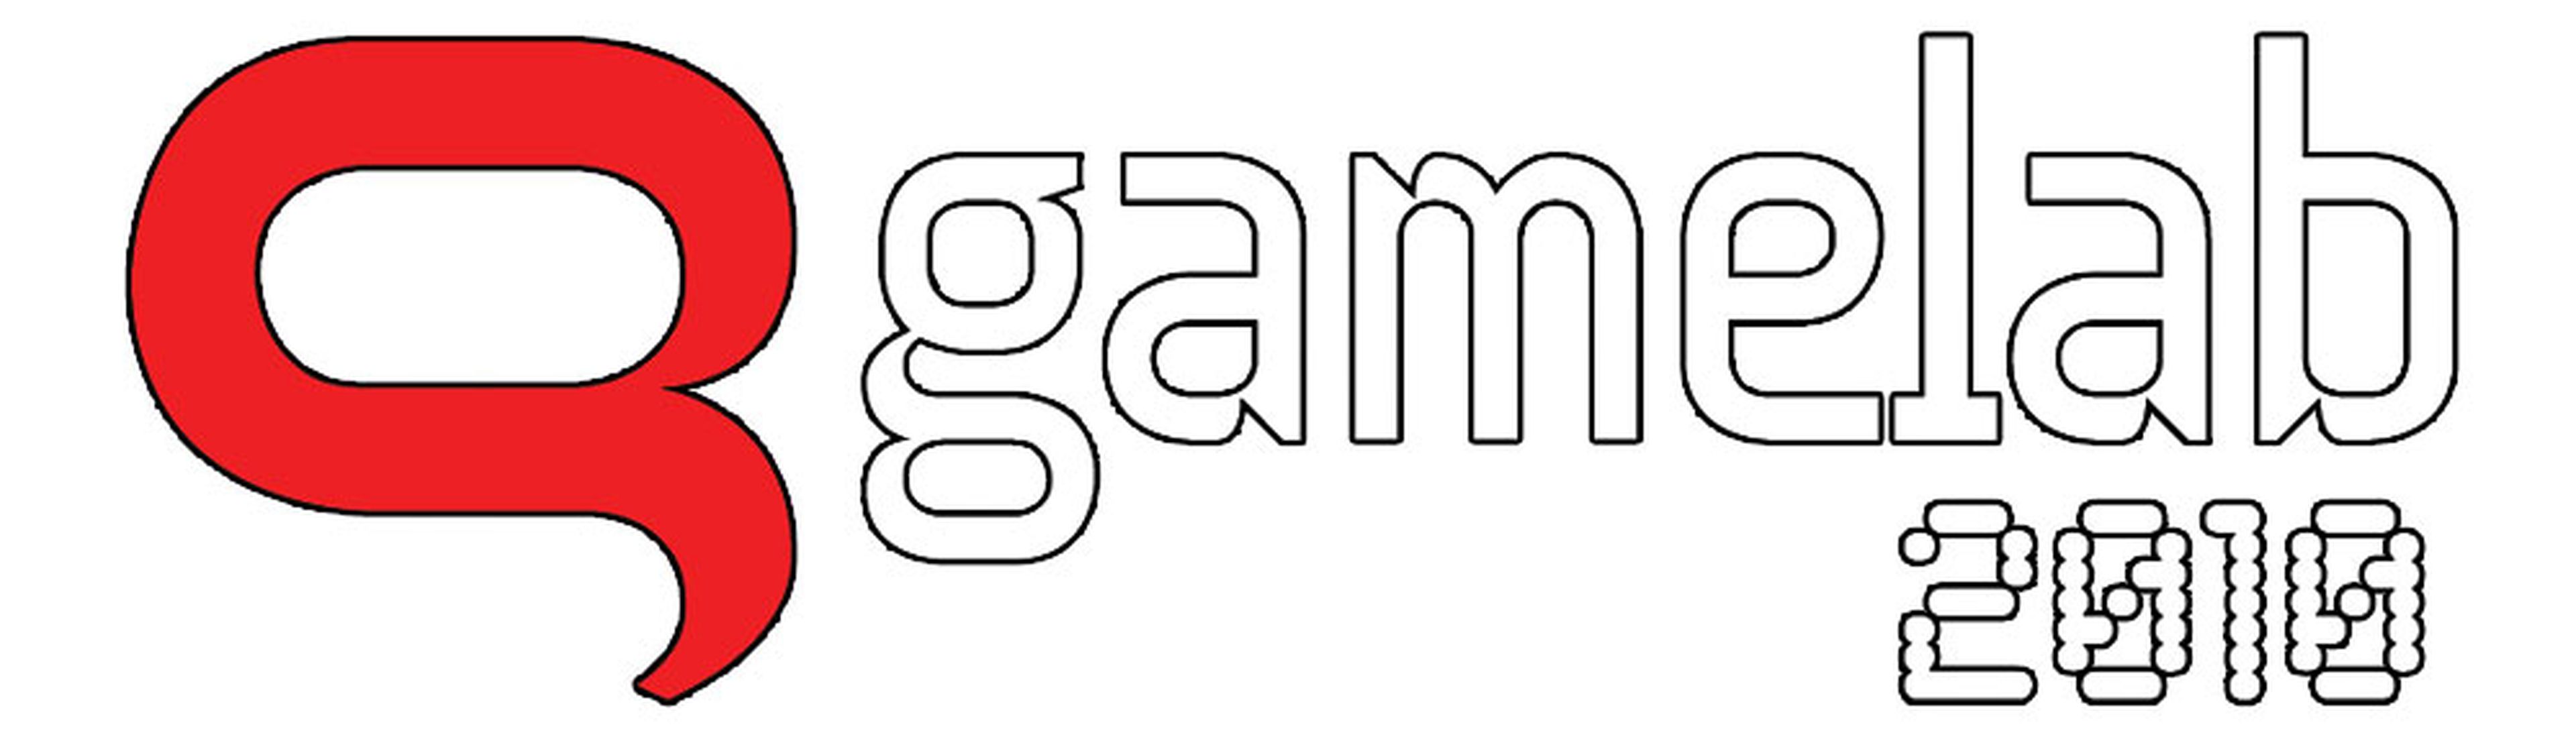 Comienza el Gamelab 2010